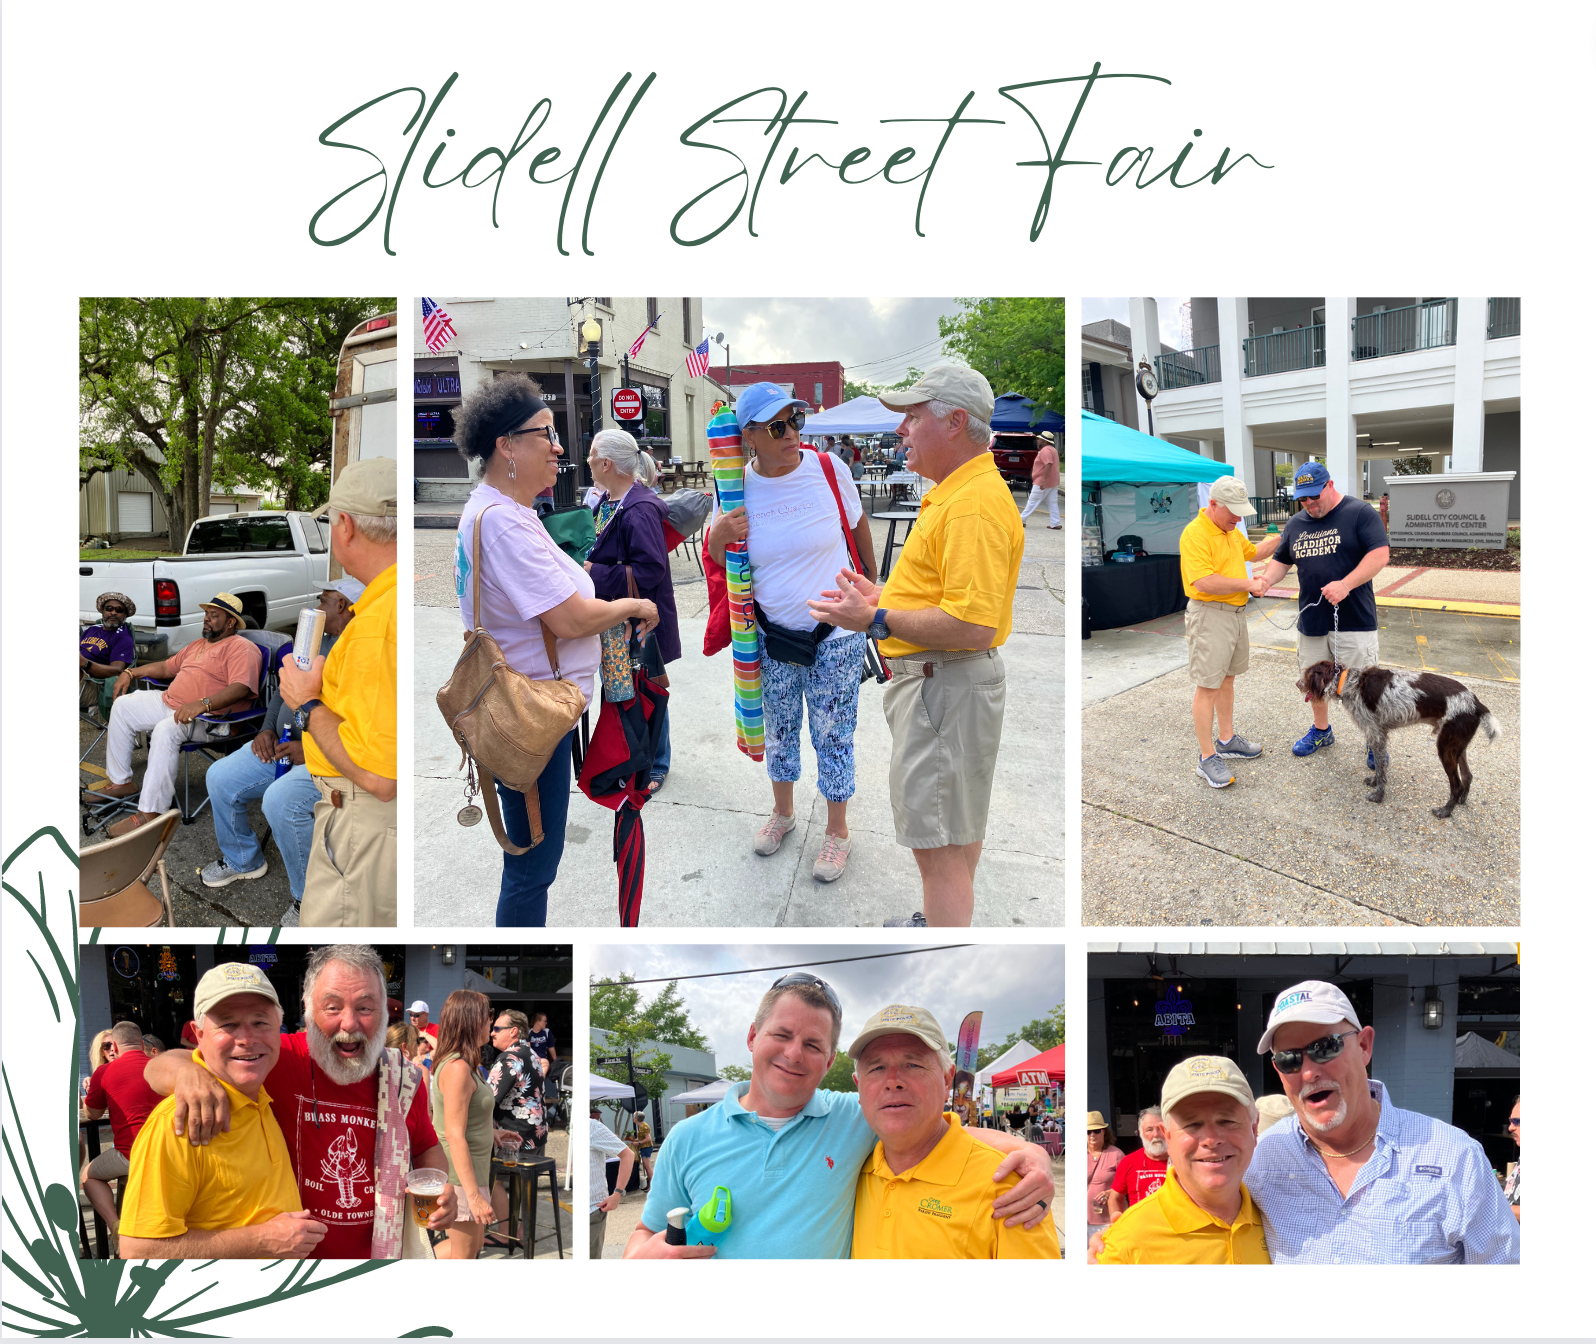 Slidell Street Fair